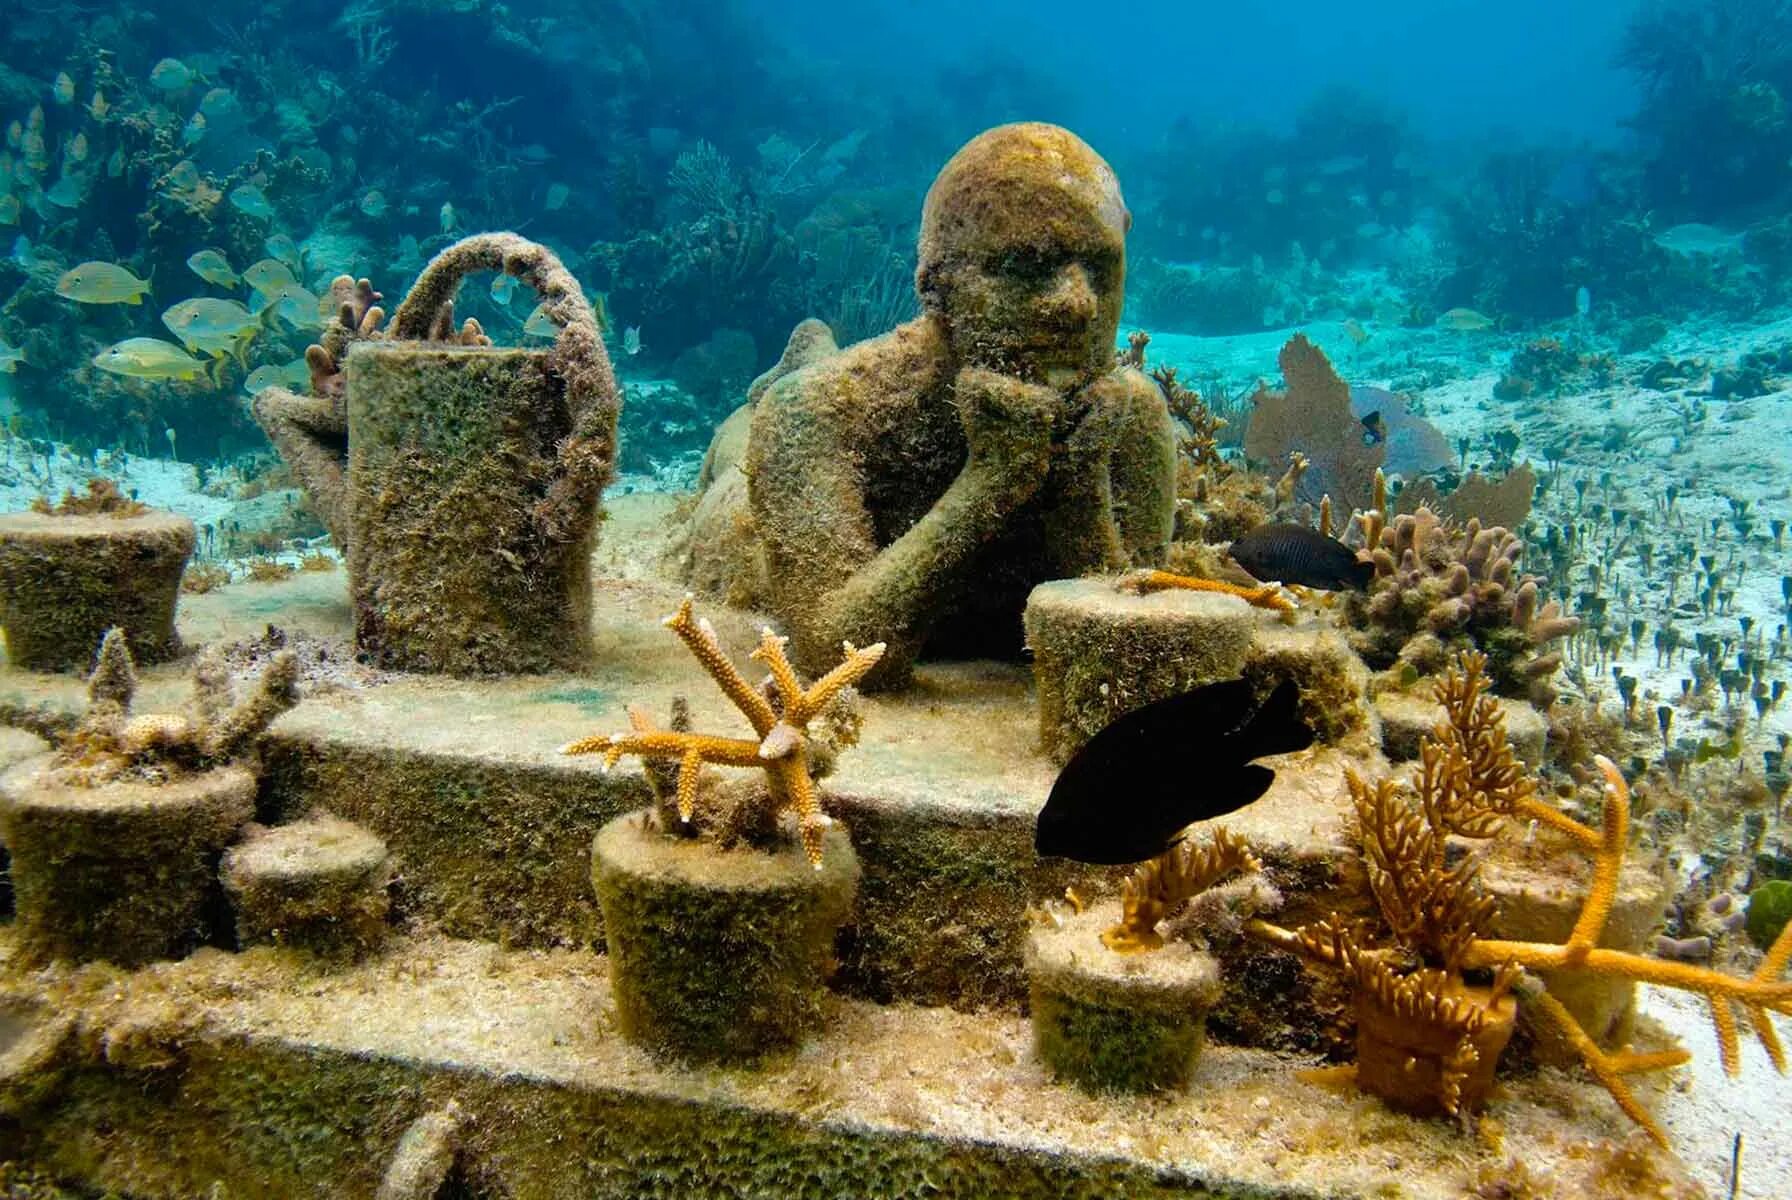 Сухой на дне океана. Музей подводных скульптур, Канкун, Мексика. Музей подводных скульптур в Канкуне. Подводный музей Musa Канкун. Музей подводных скульптур в Канкуне Мексика.